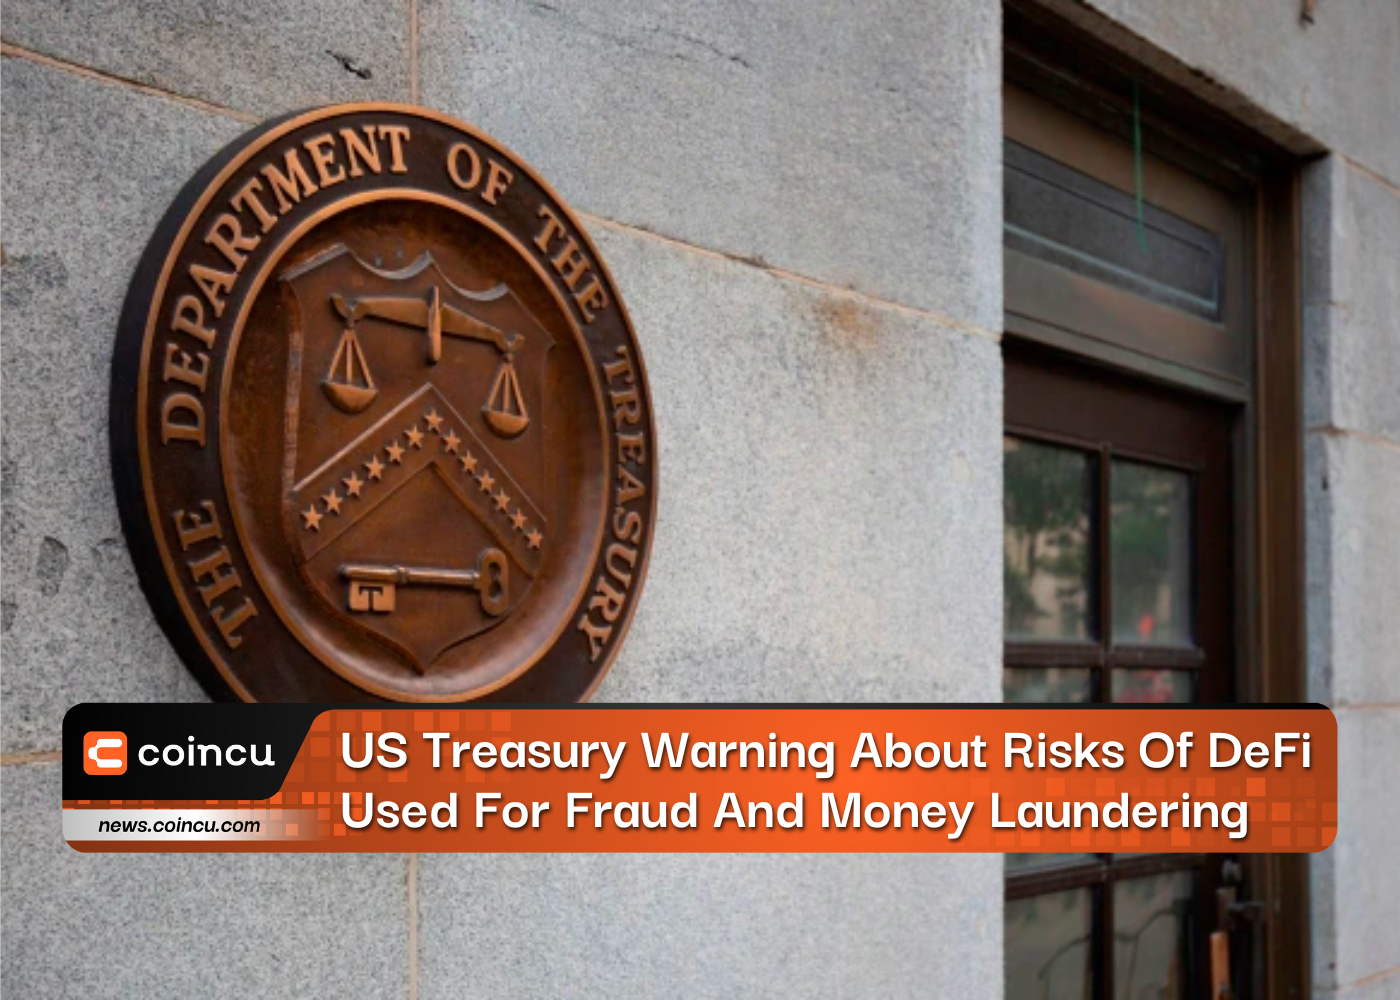 Alerta do Tesouro dos EUA sobre riscos de DeFi usado para fraude e lavagem de dinheiro